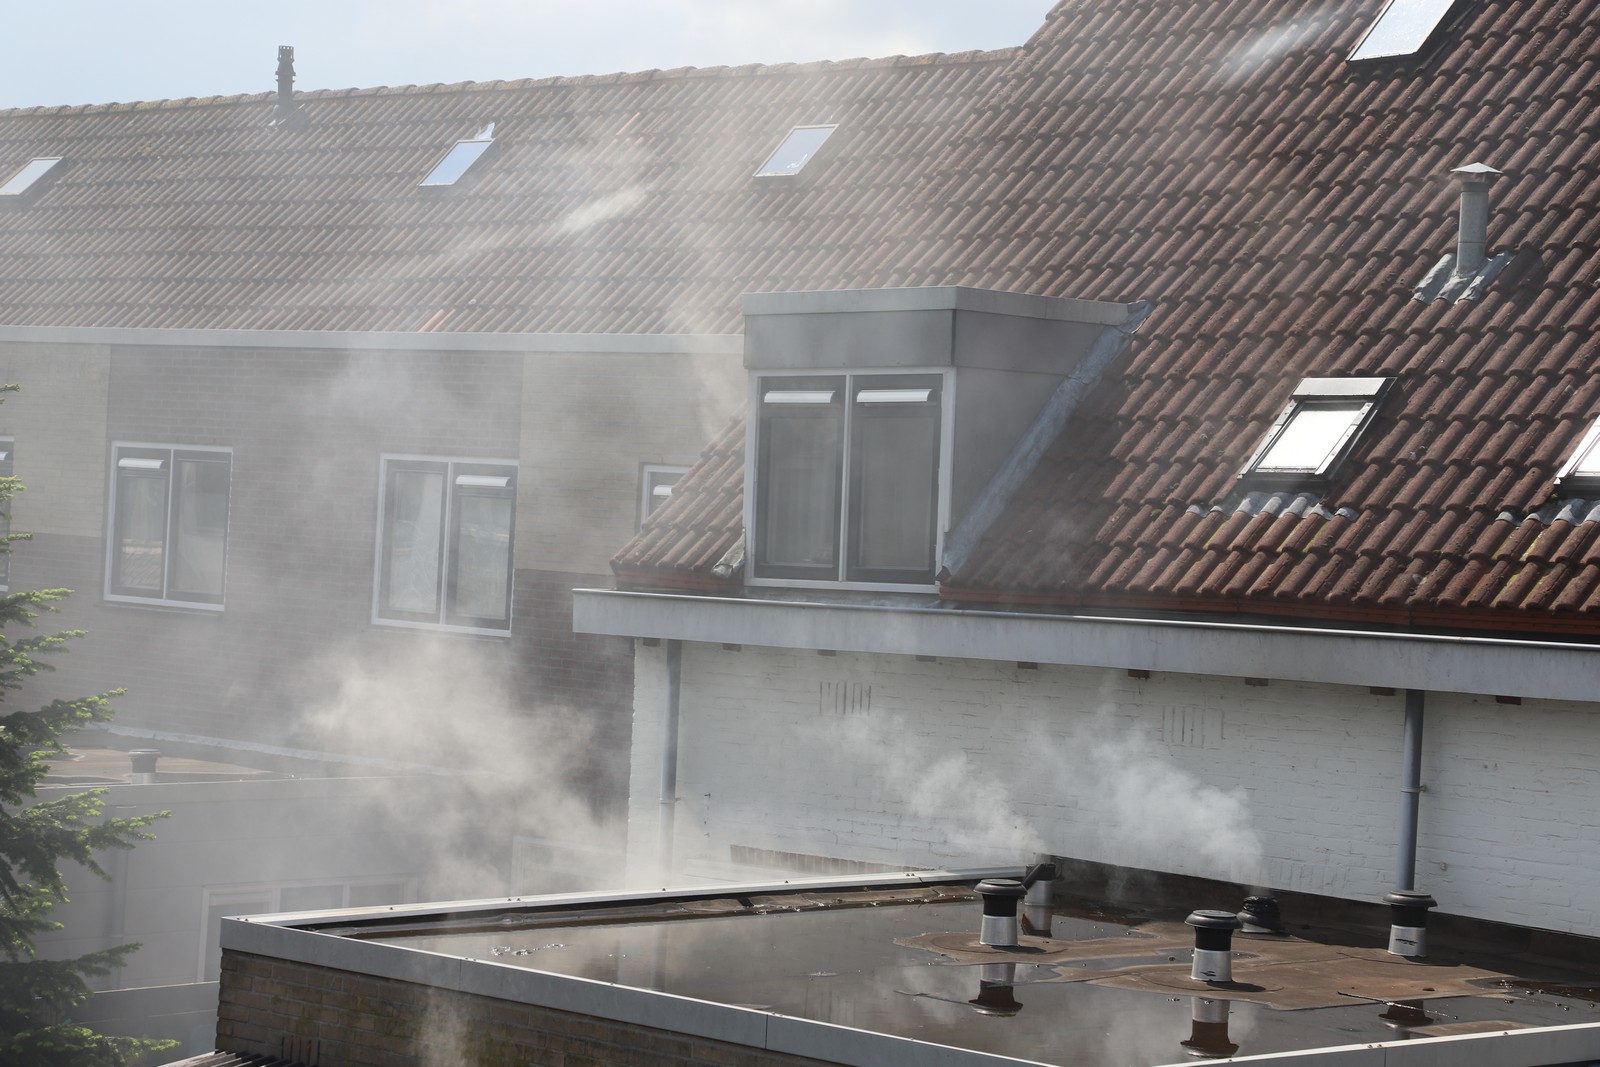 Brand in woning aan Veen Valckstraat in Kampen: keukenbrand snel onder controle